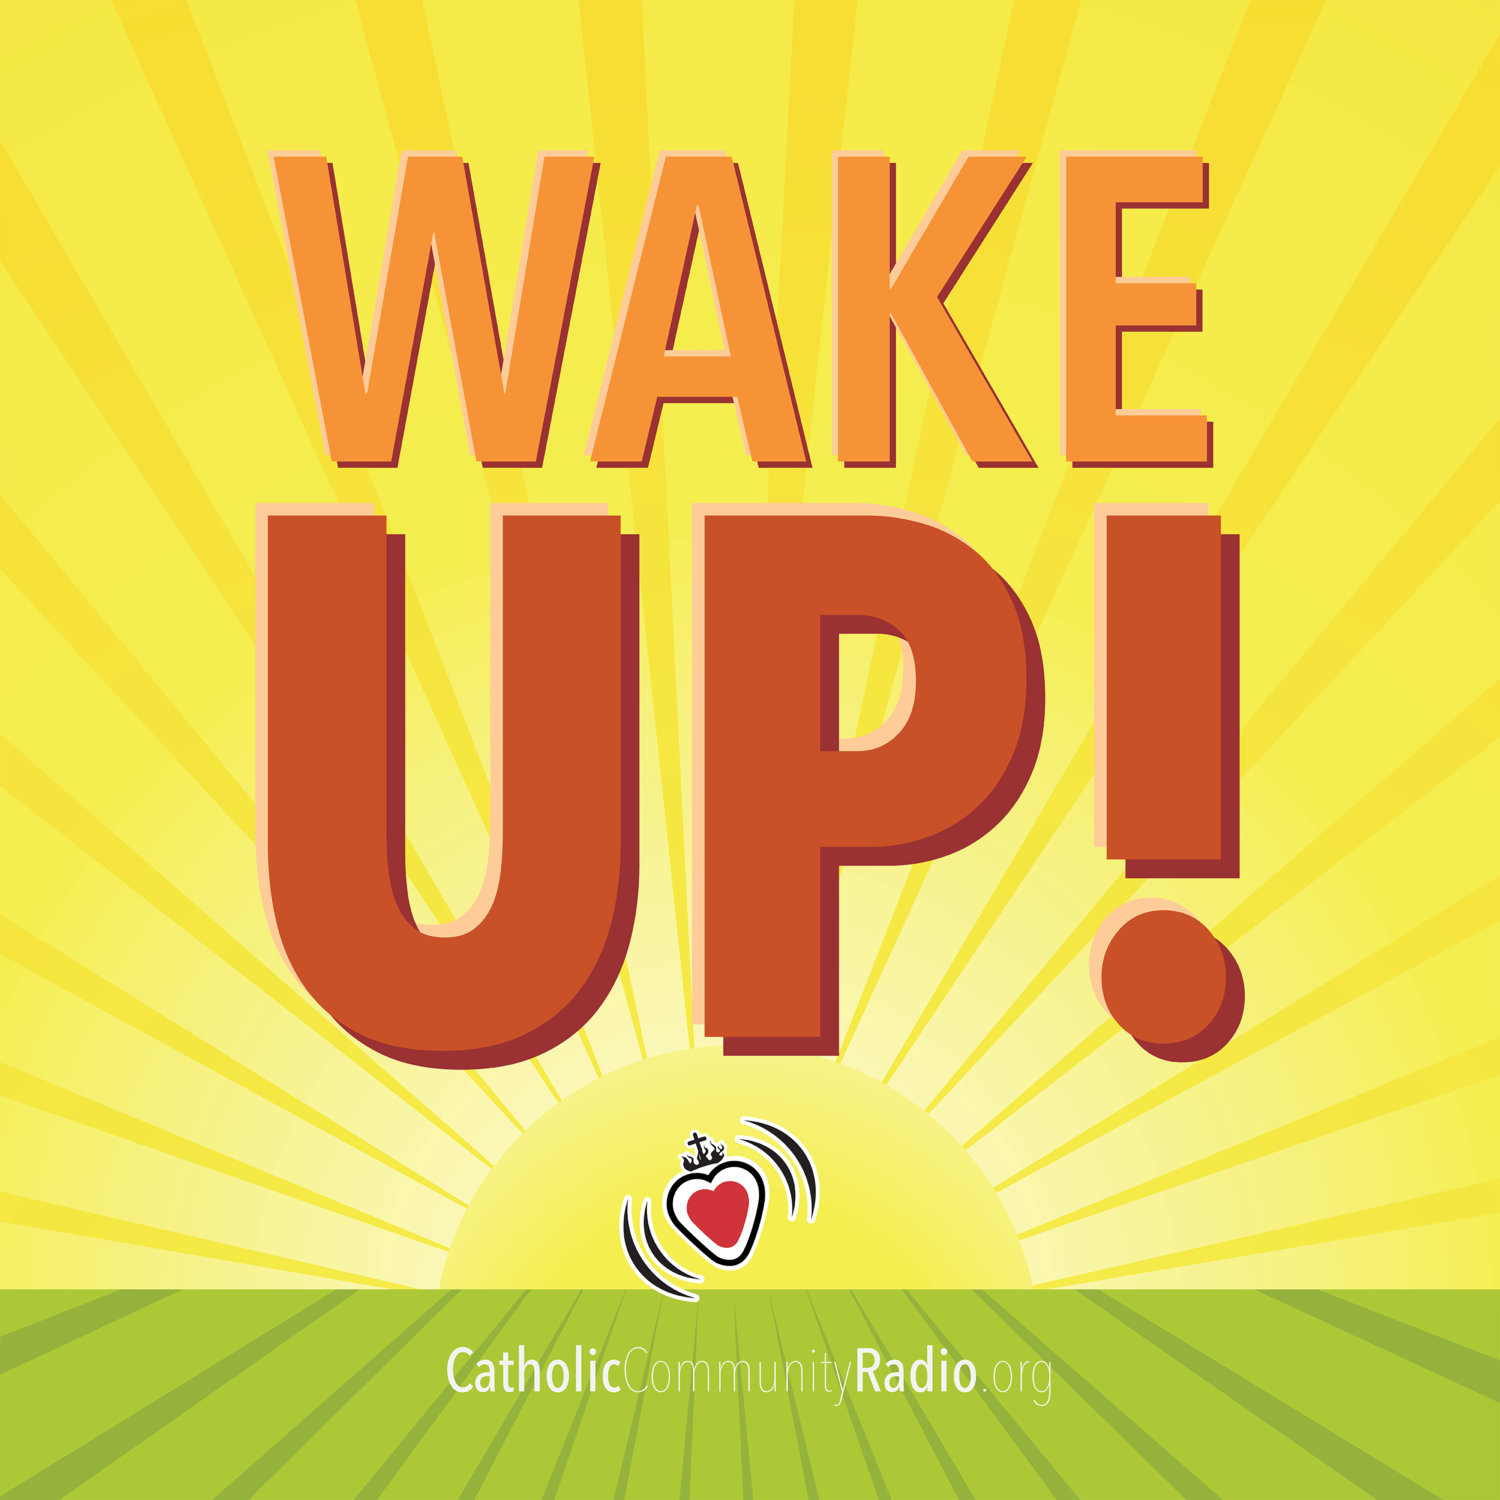 Wake Up Catholic Community Radio